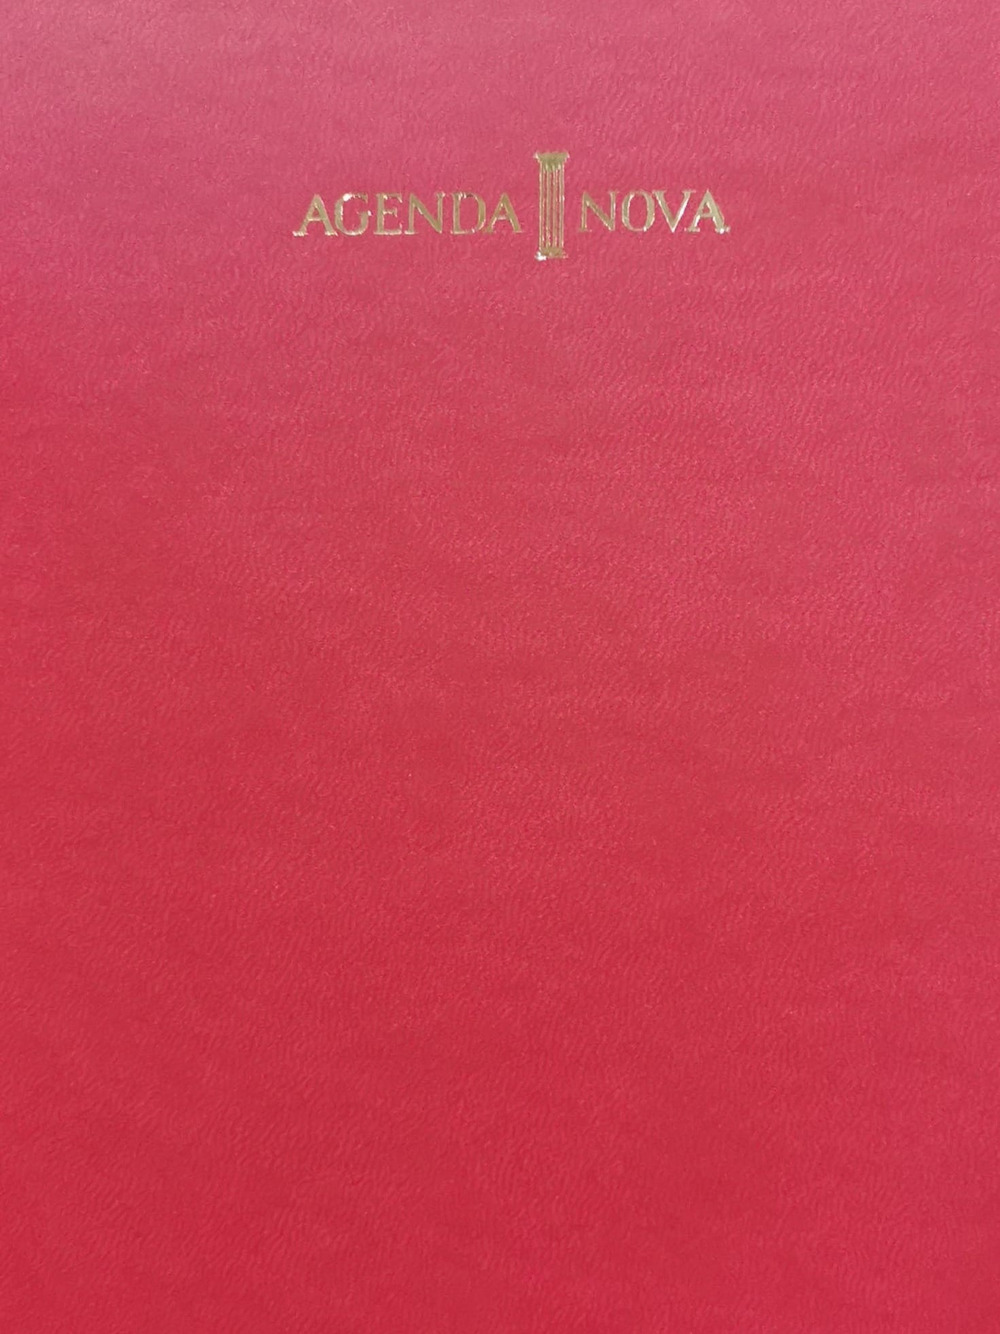 Agenda nova